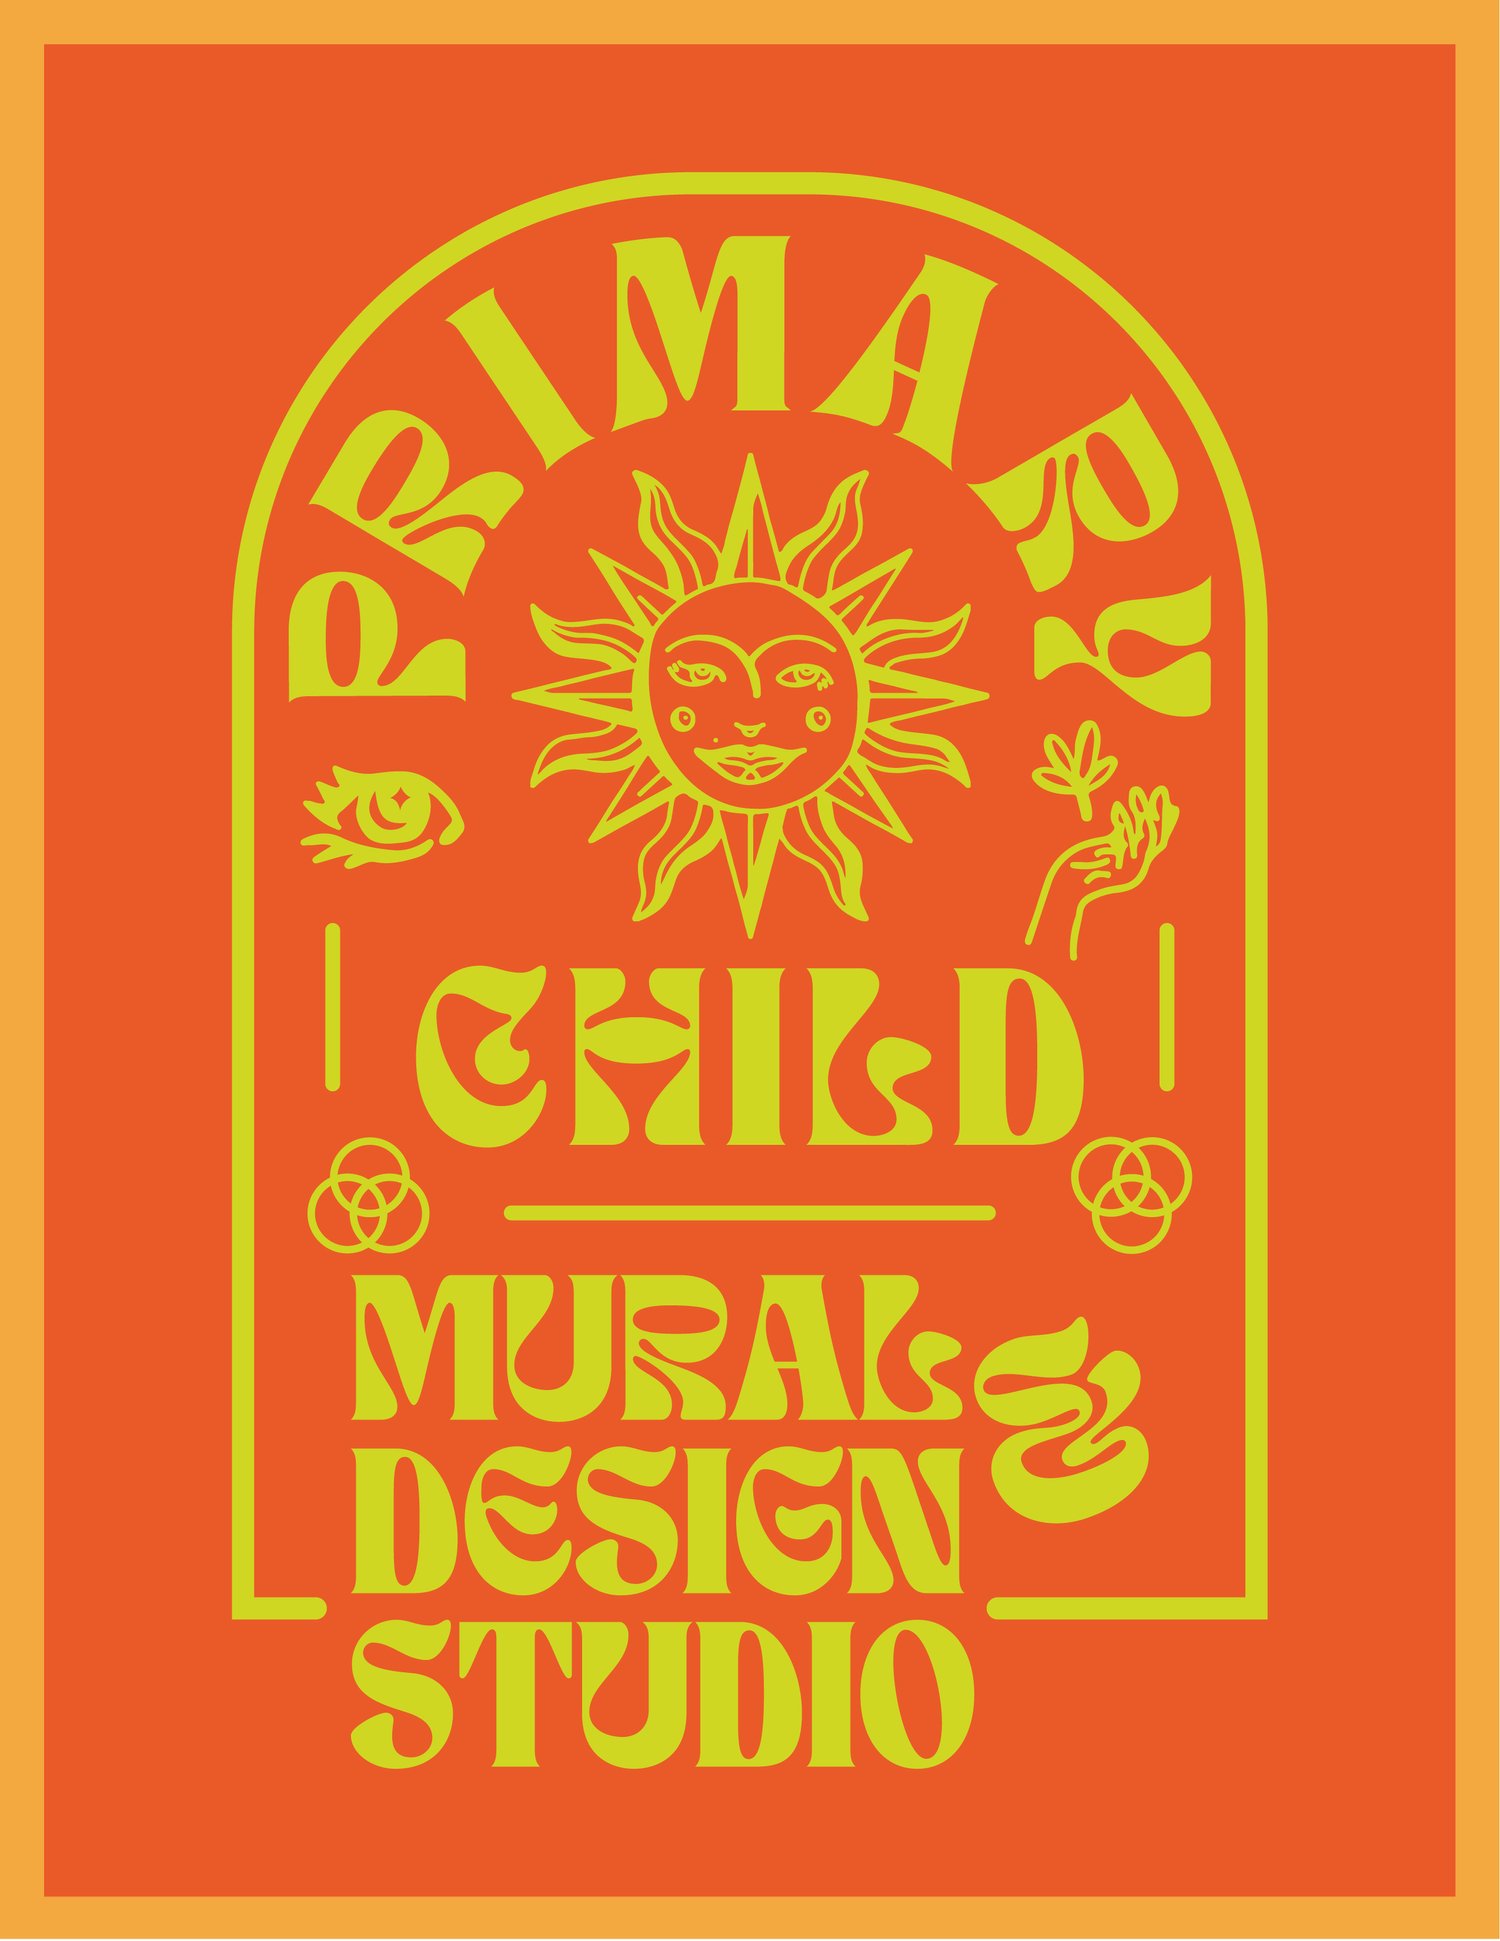 Primary Child Mural & Design Studio